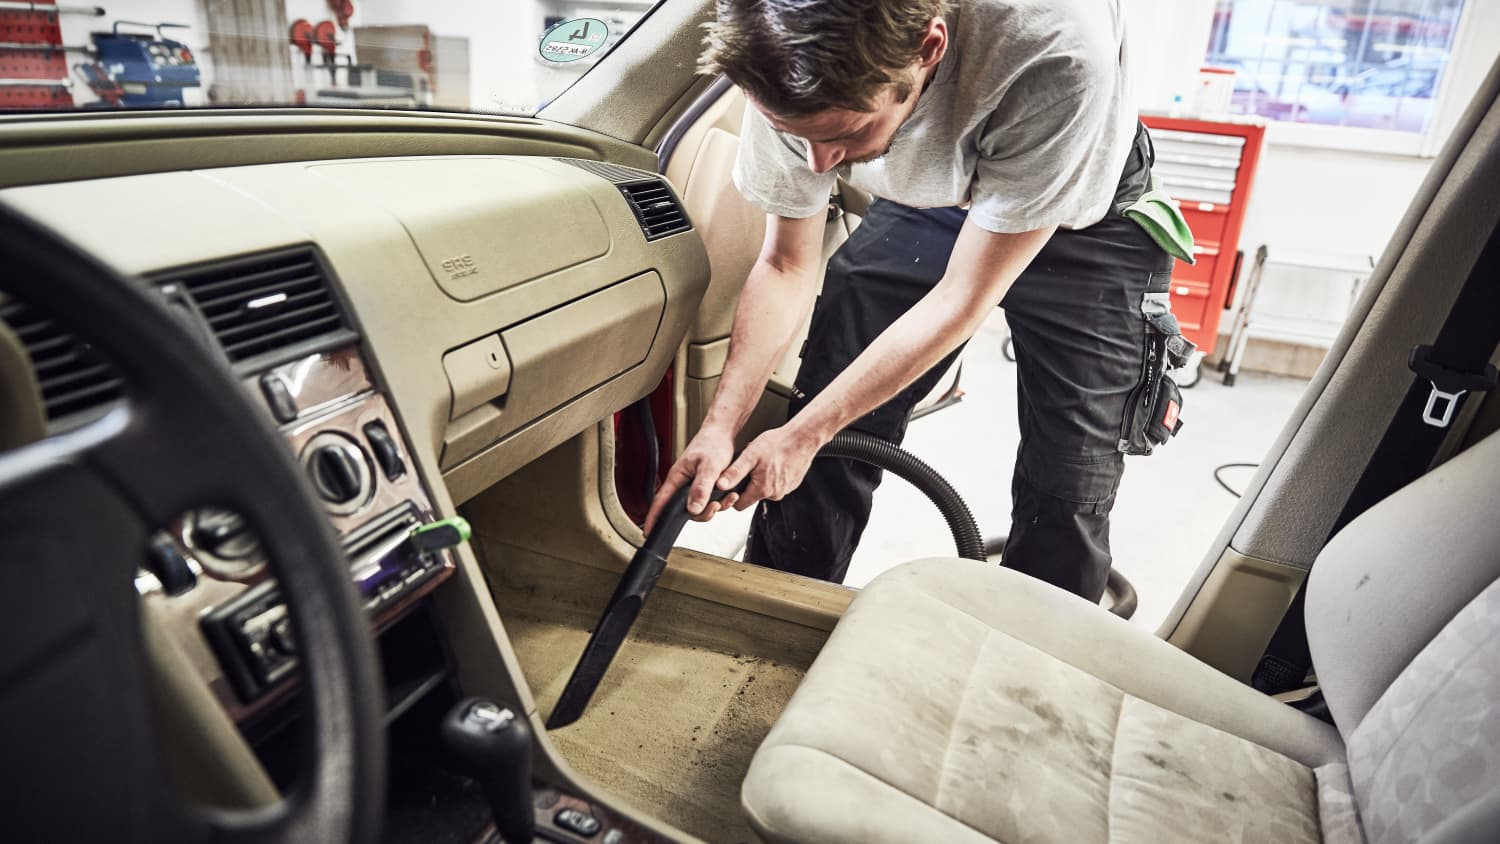 Autoaufbereitung – Tipps für Reinigung und Pflege